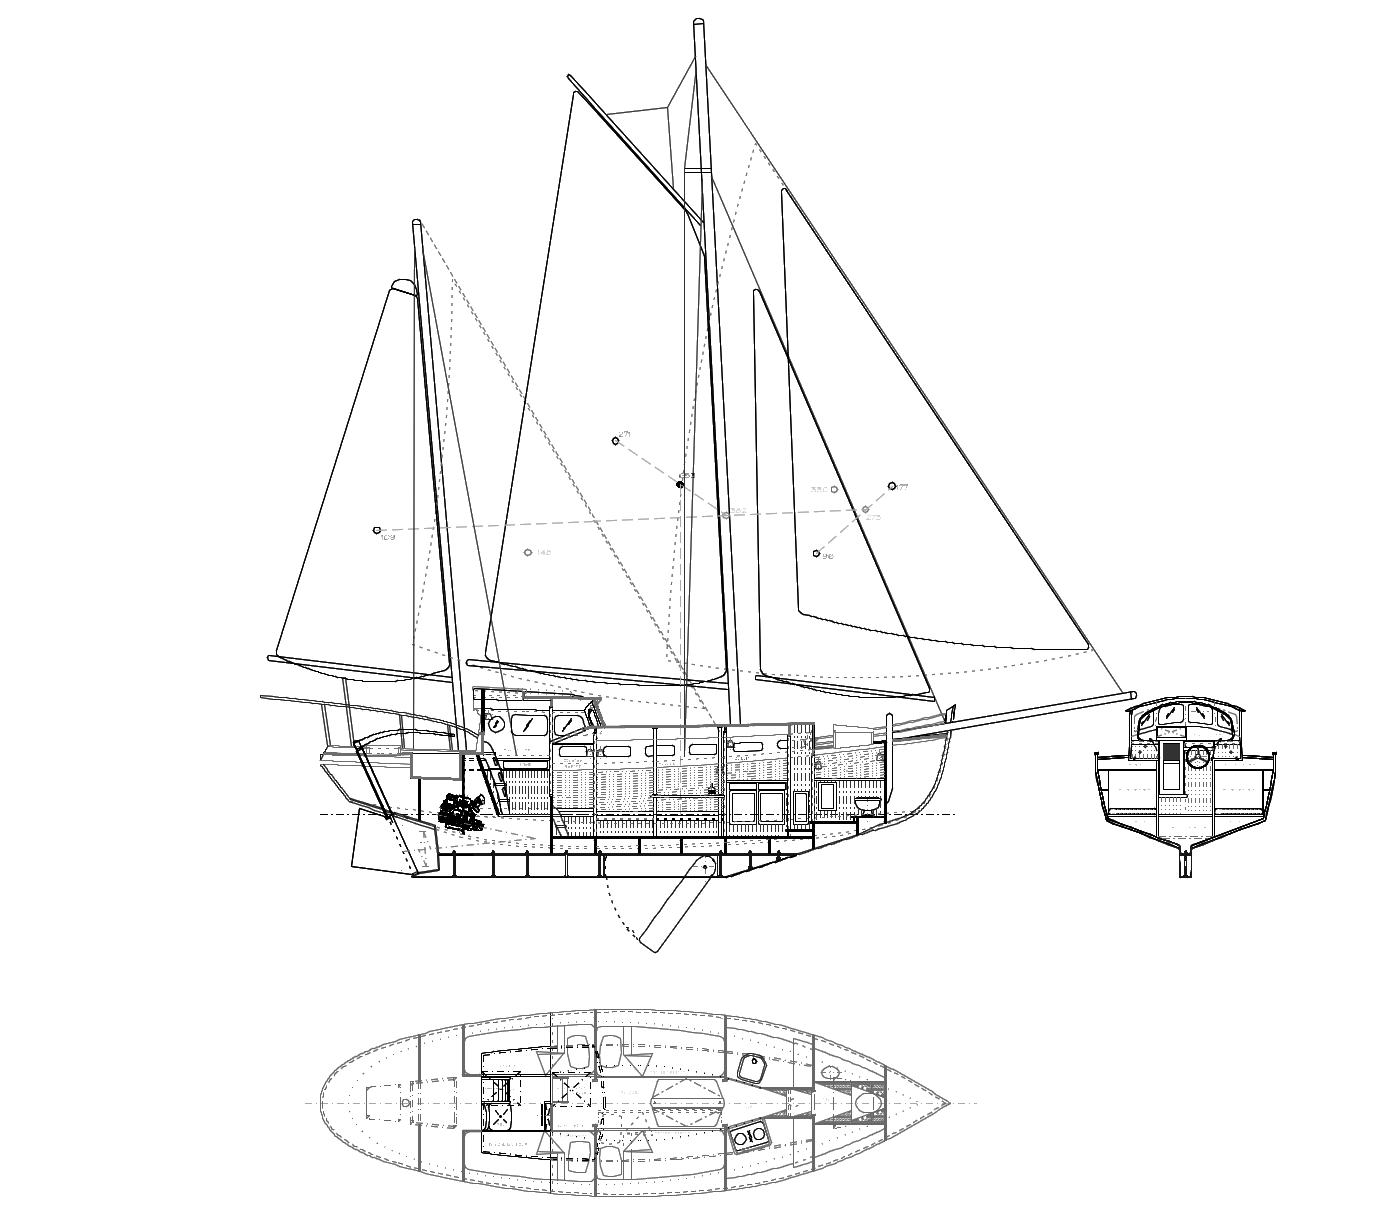 33' Fantail Ketch Sail Plan & Interior - Kasten Marine Design, Inc.